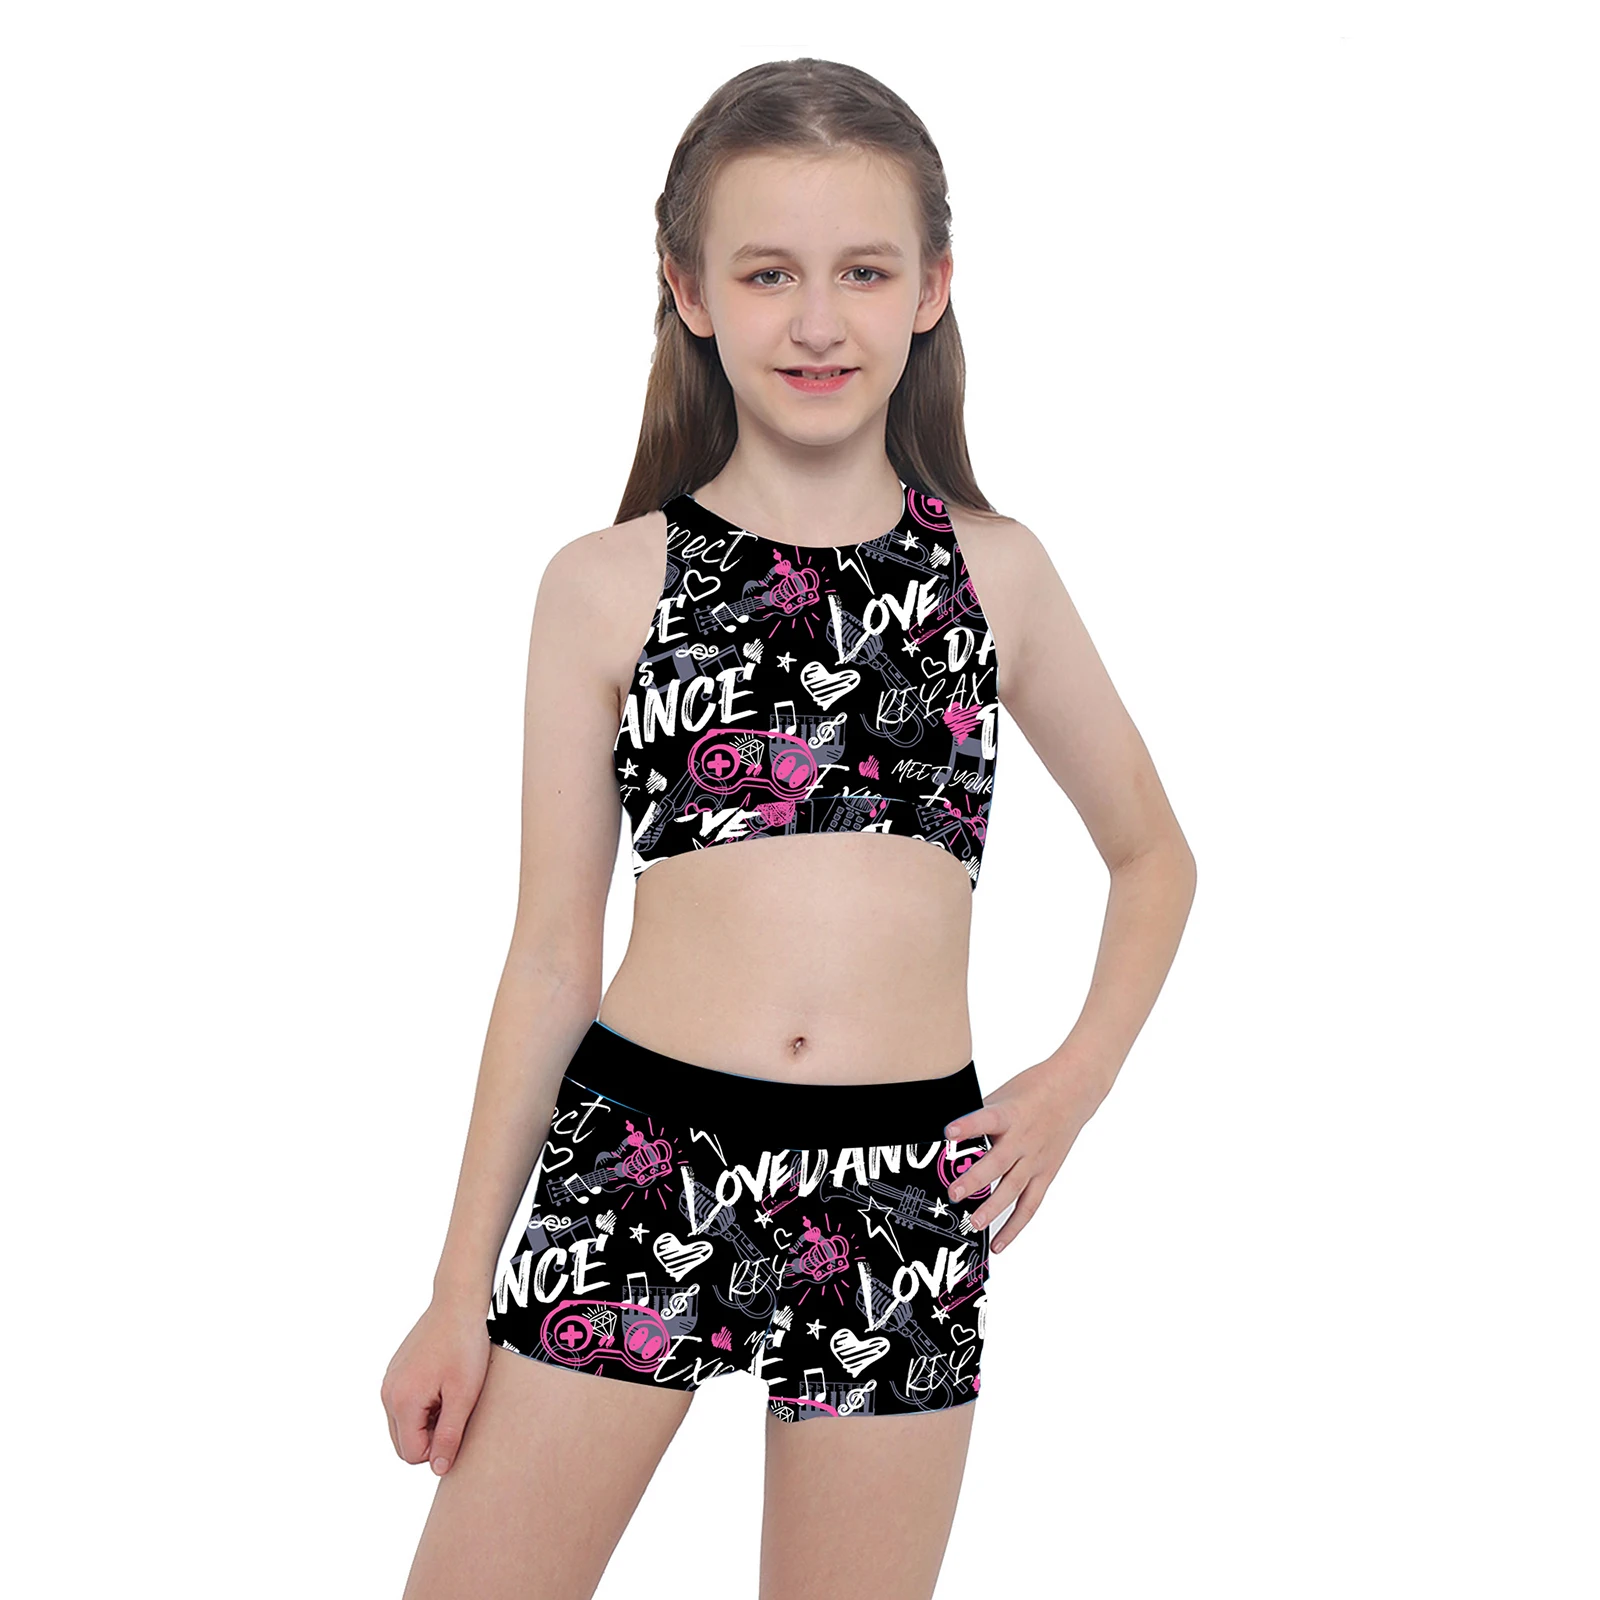 Kids Girls Ballet Dance Outfit Gymnastics Crop Tops+Bottom Set Workout Dancewear 